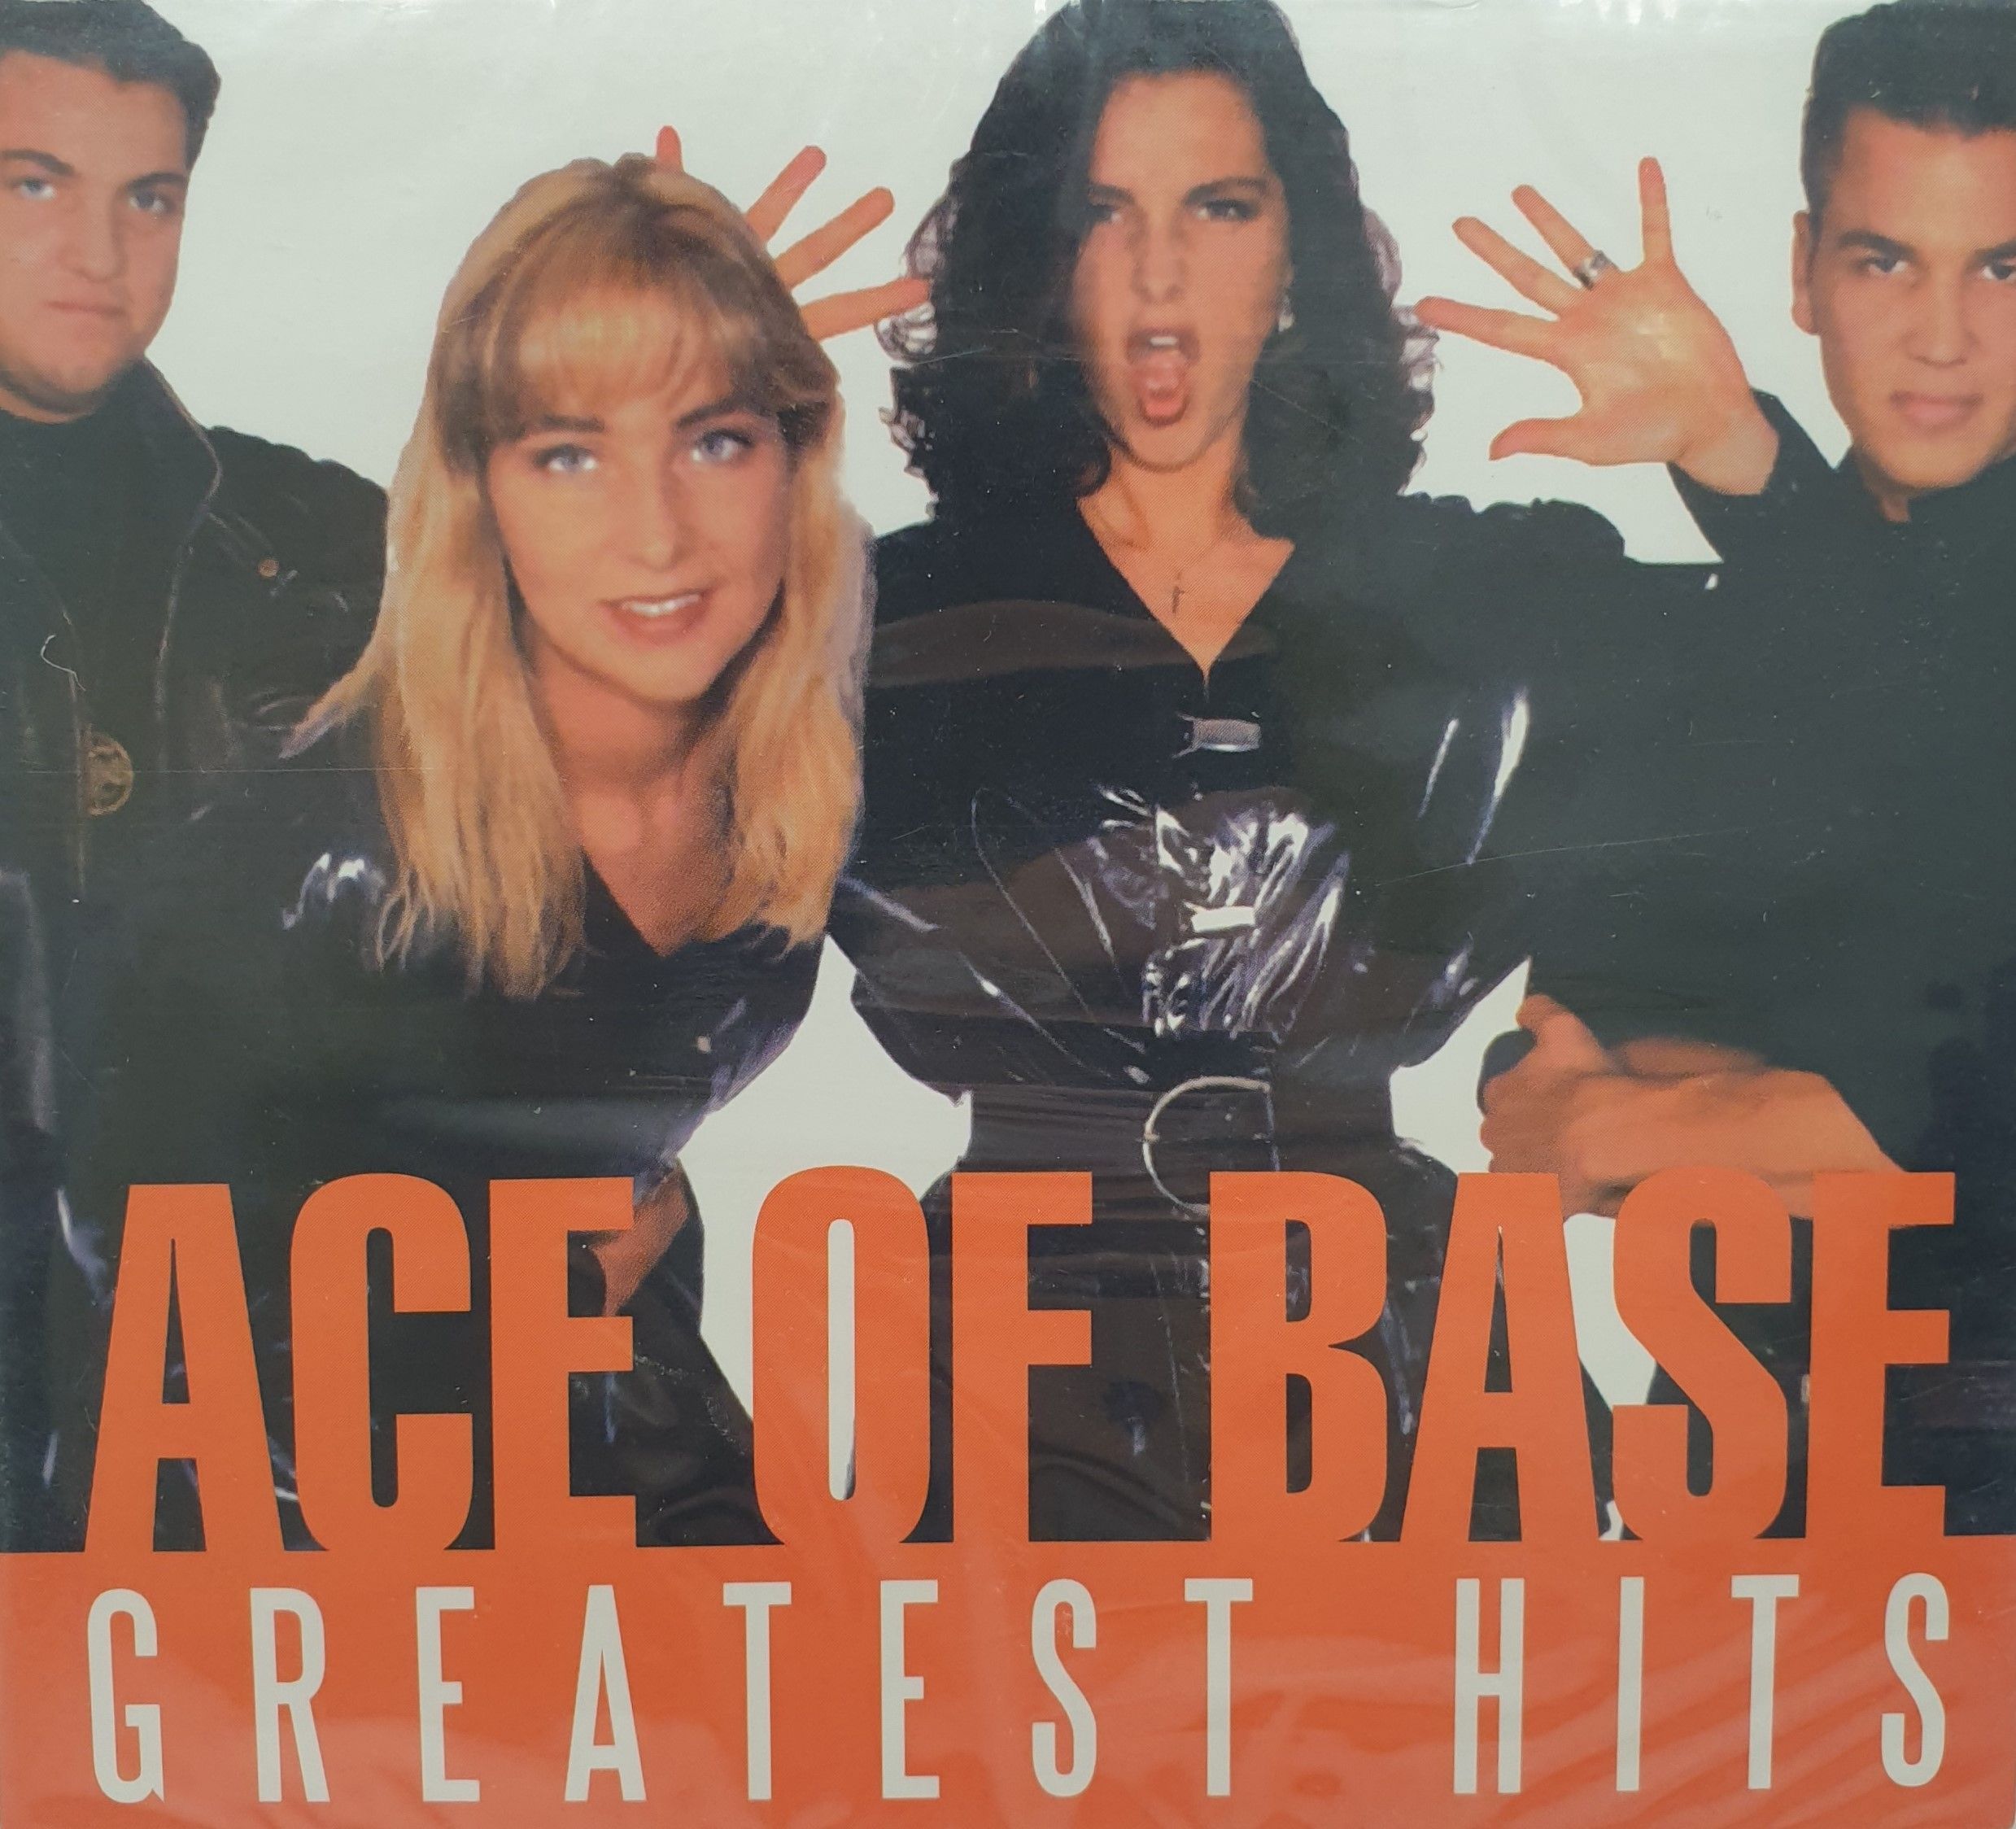 Асов бейс лучшие песни. Группа Ace of Base. Ace of Base CD обложки альбомов. Ace of Base CD. Ace of Base Greatest Hits.